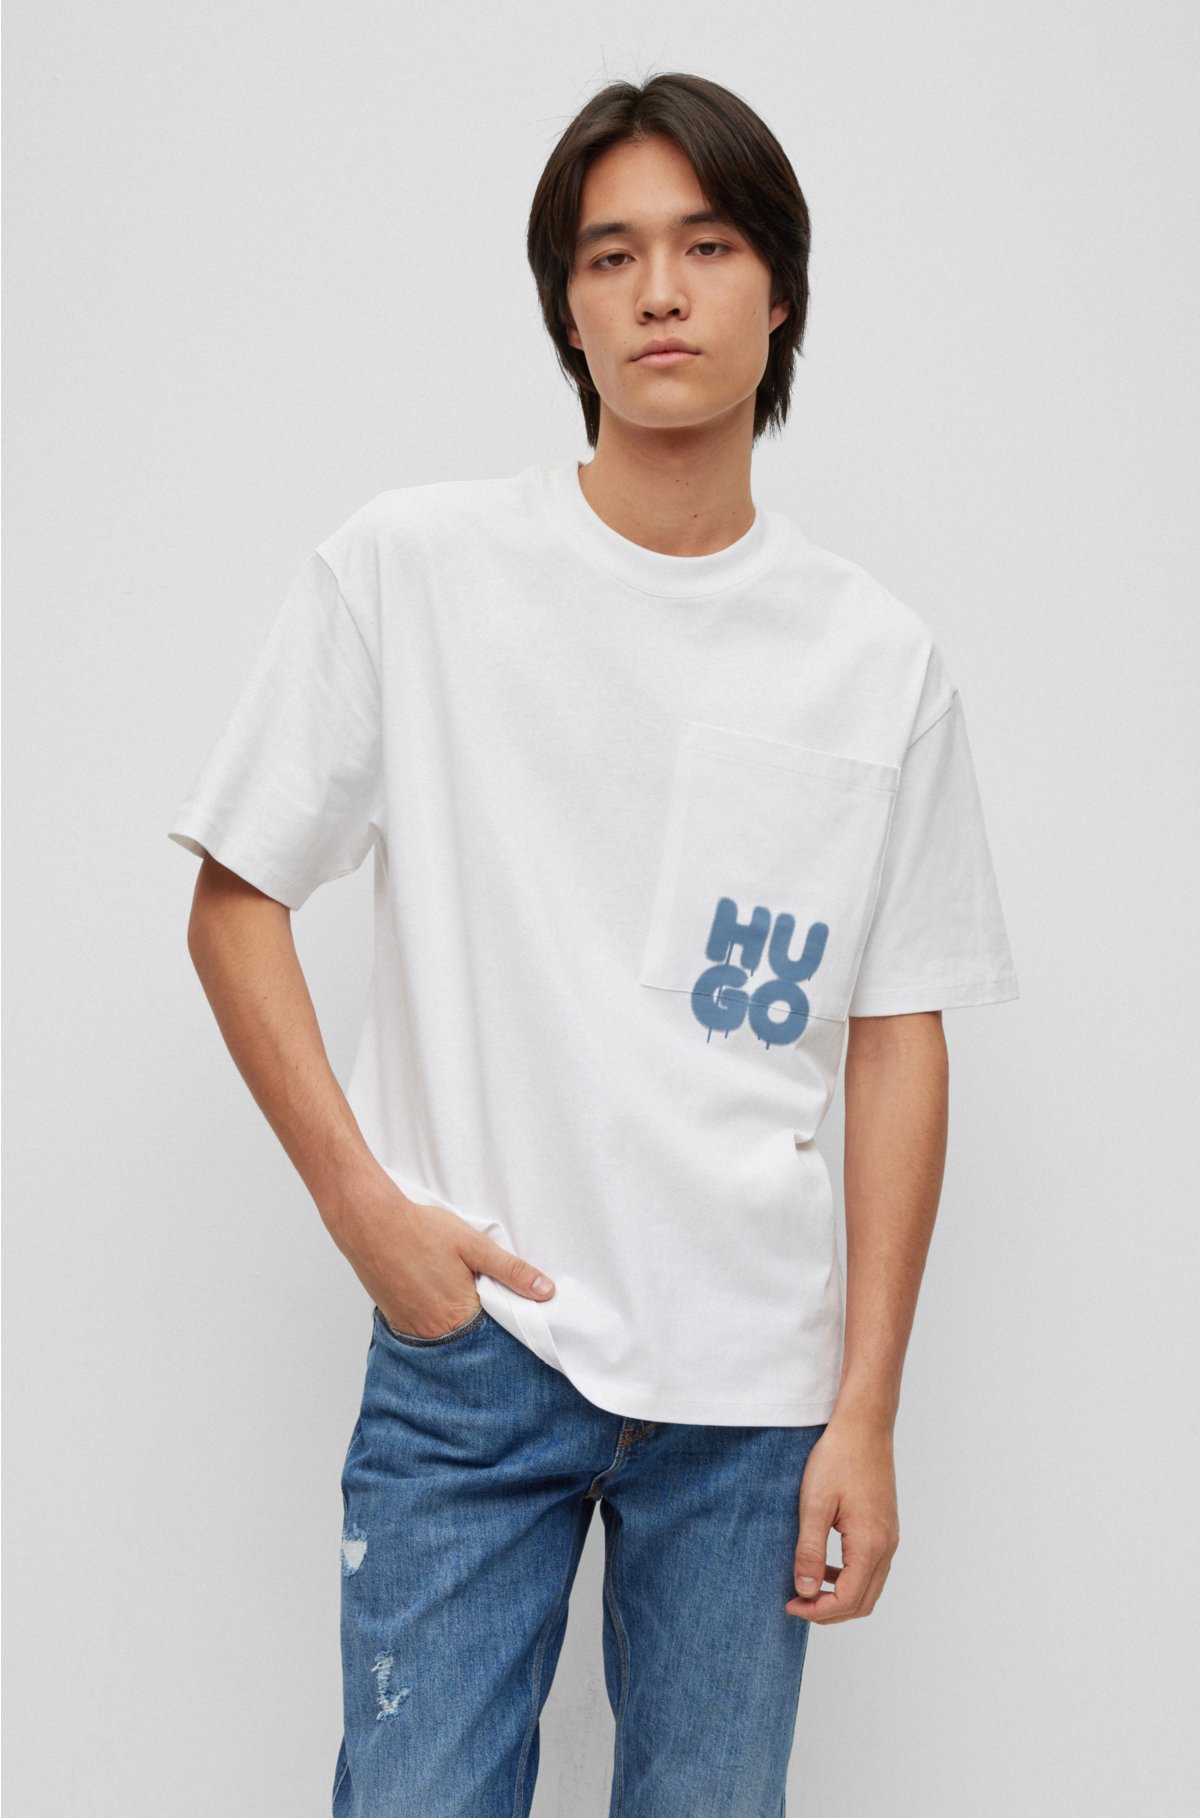 Louis Vuitton X NBA tshirt, Men's Fashion, Tops & Sets, Tshirts